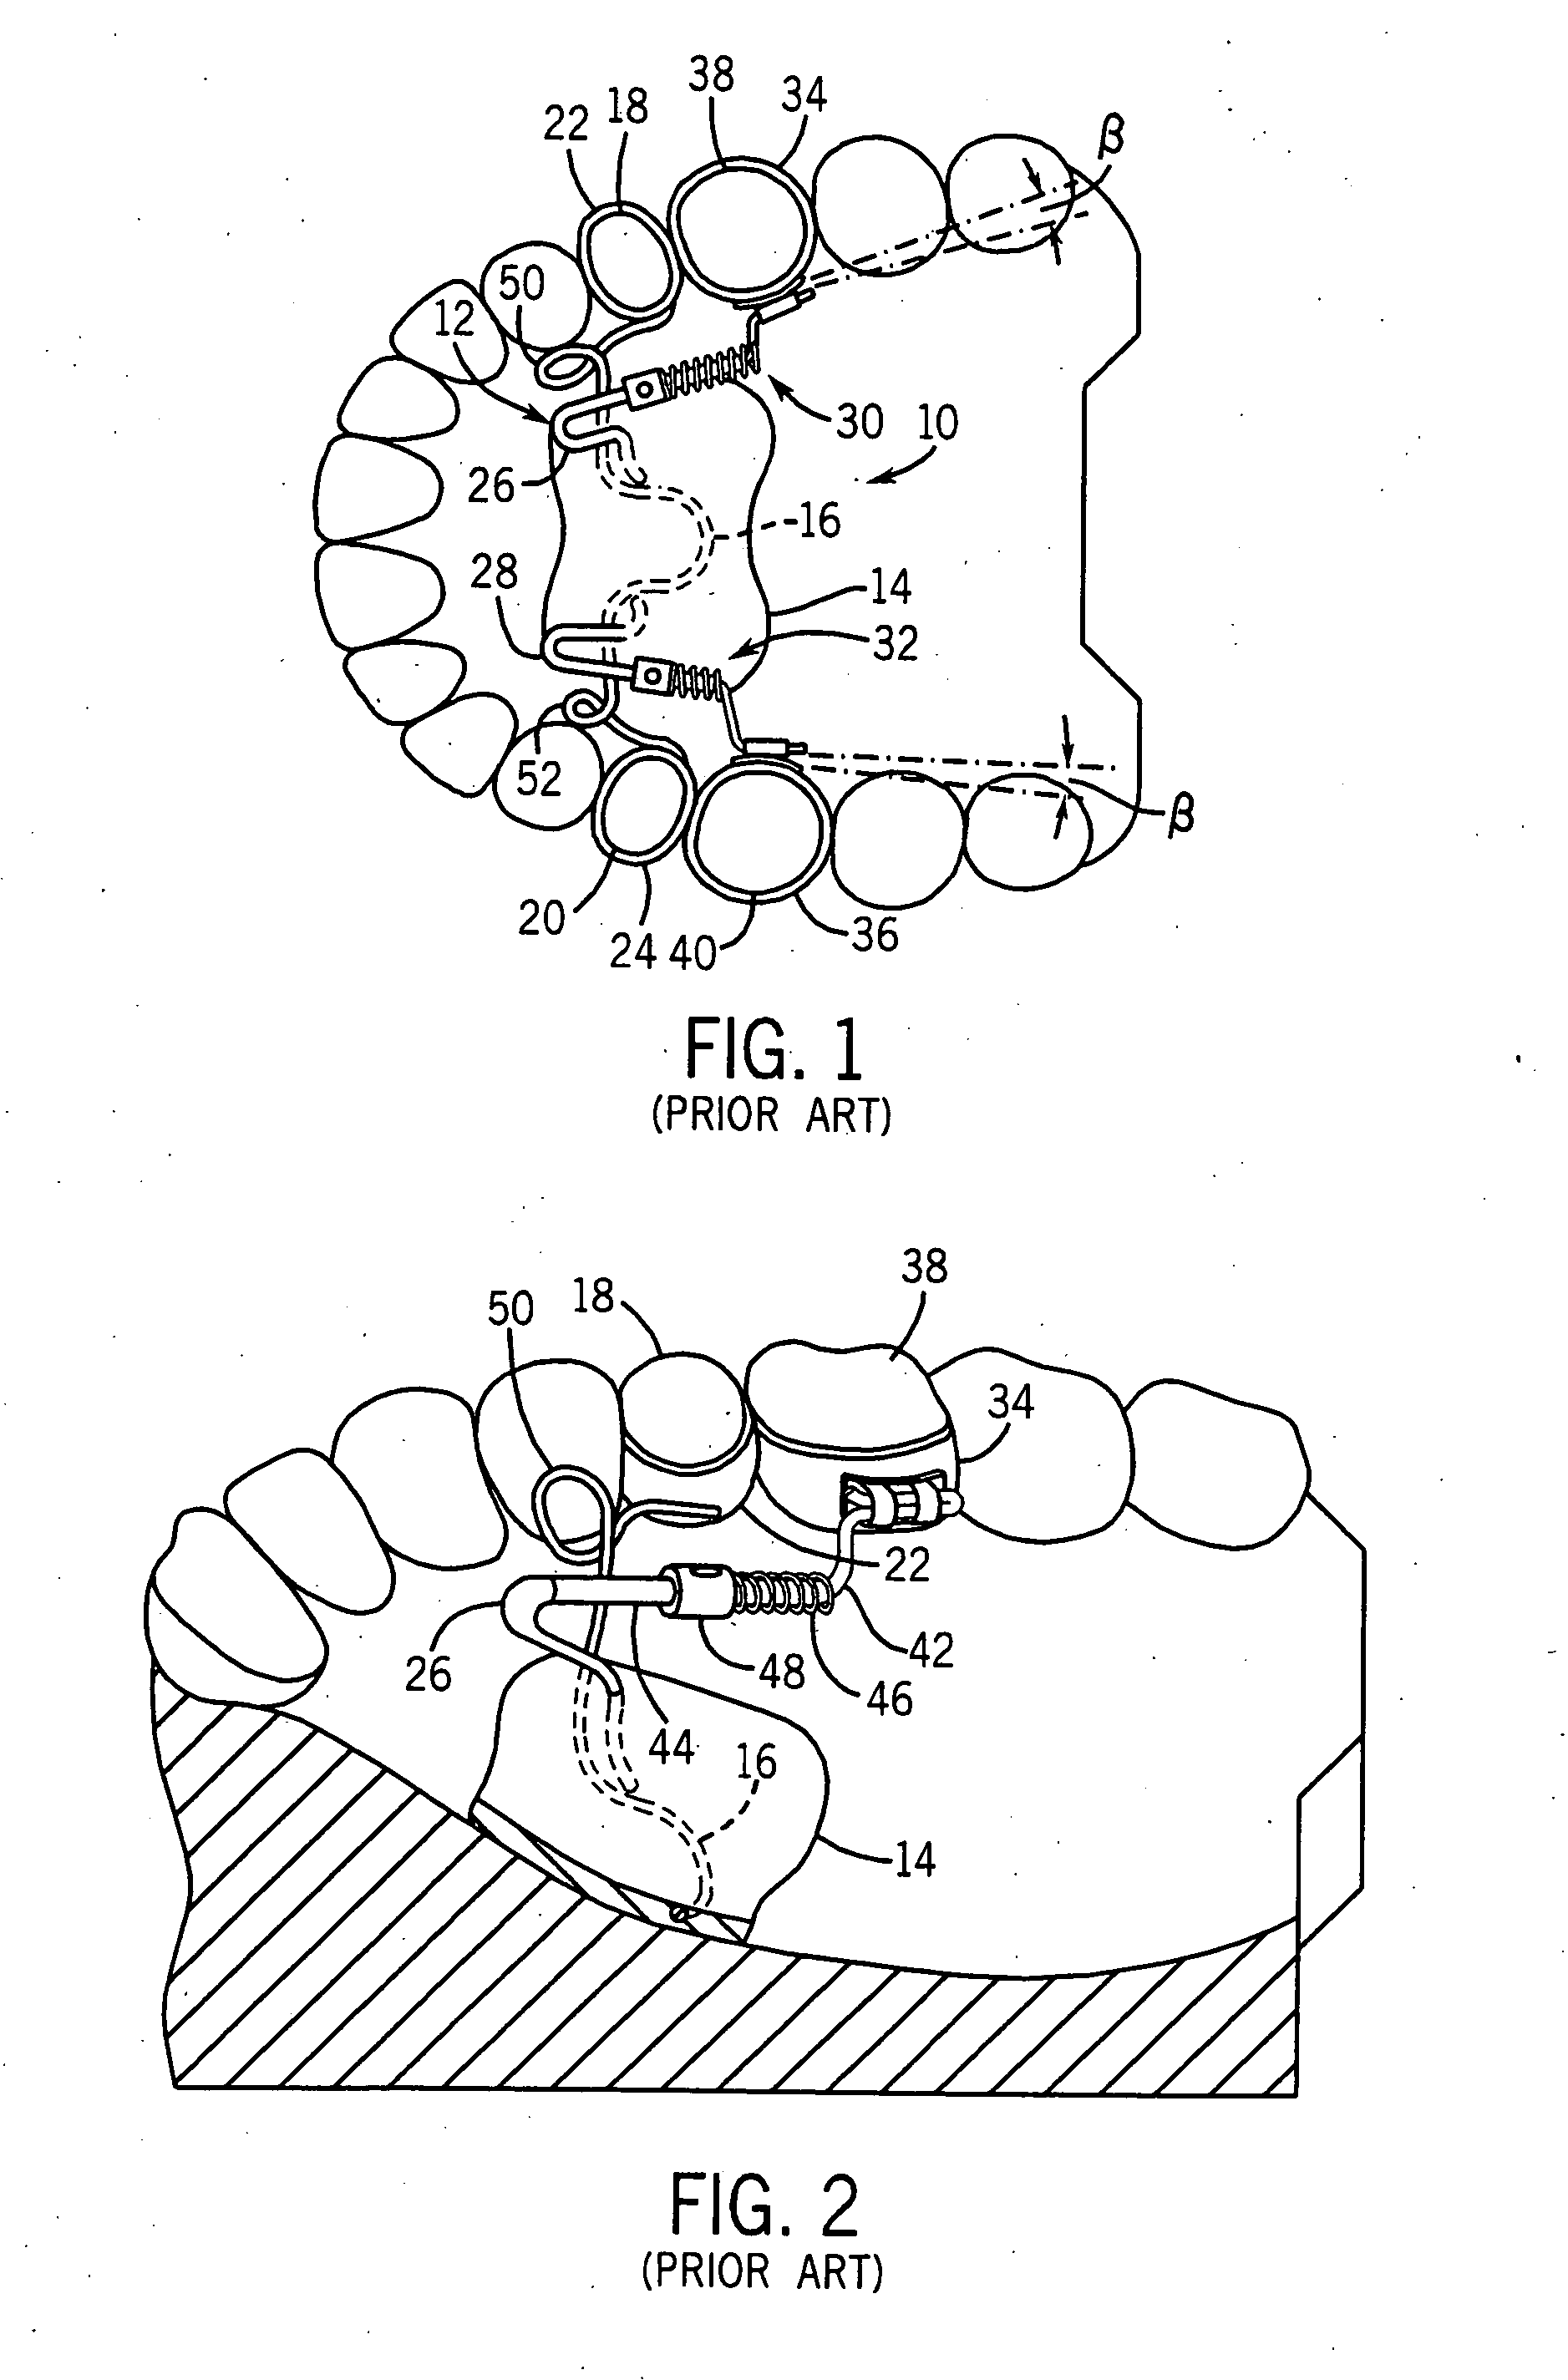 Orthodontic distalizing apparatus